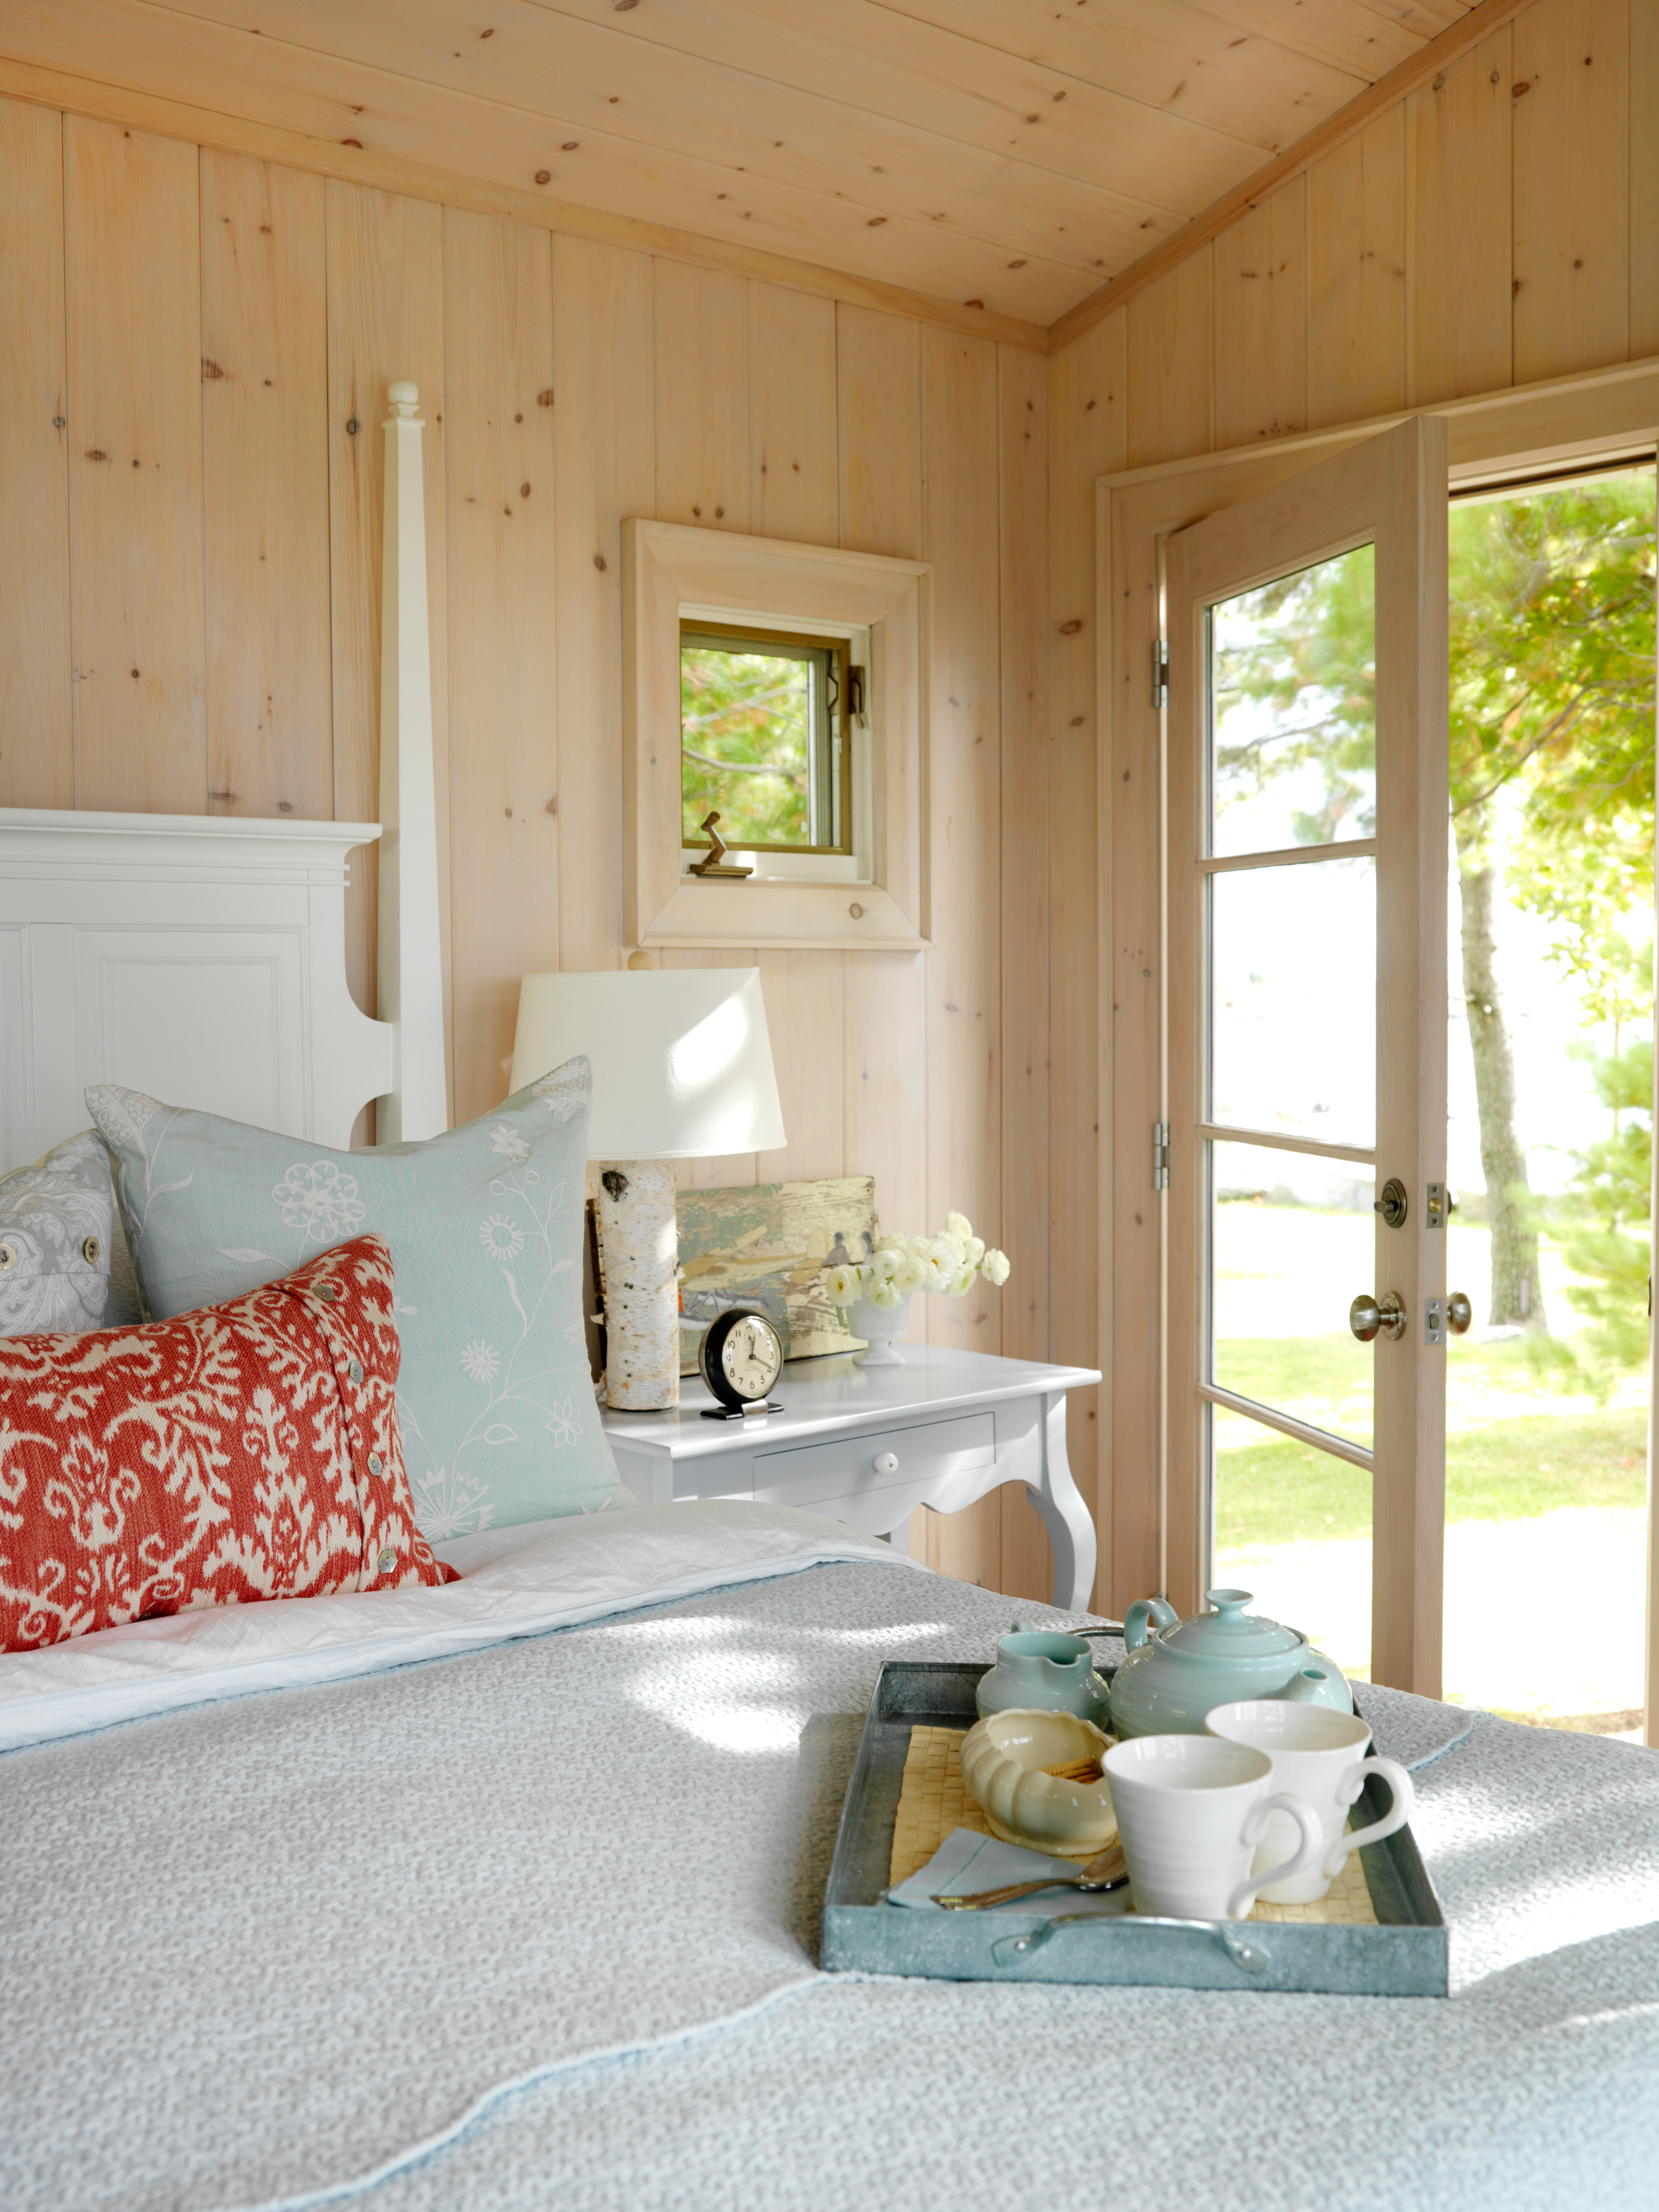 Small Cottage Kitchen Design Ideas Cabin Decor Small Cabin